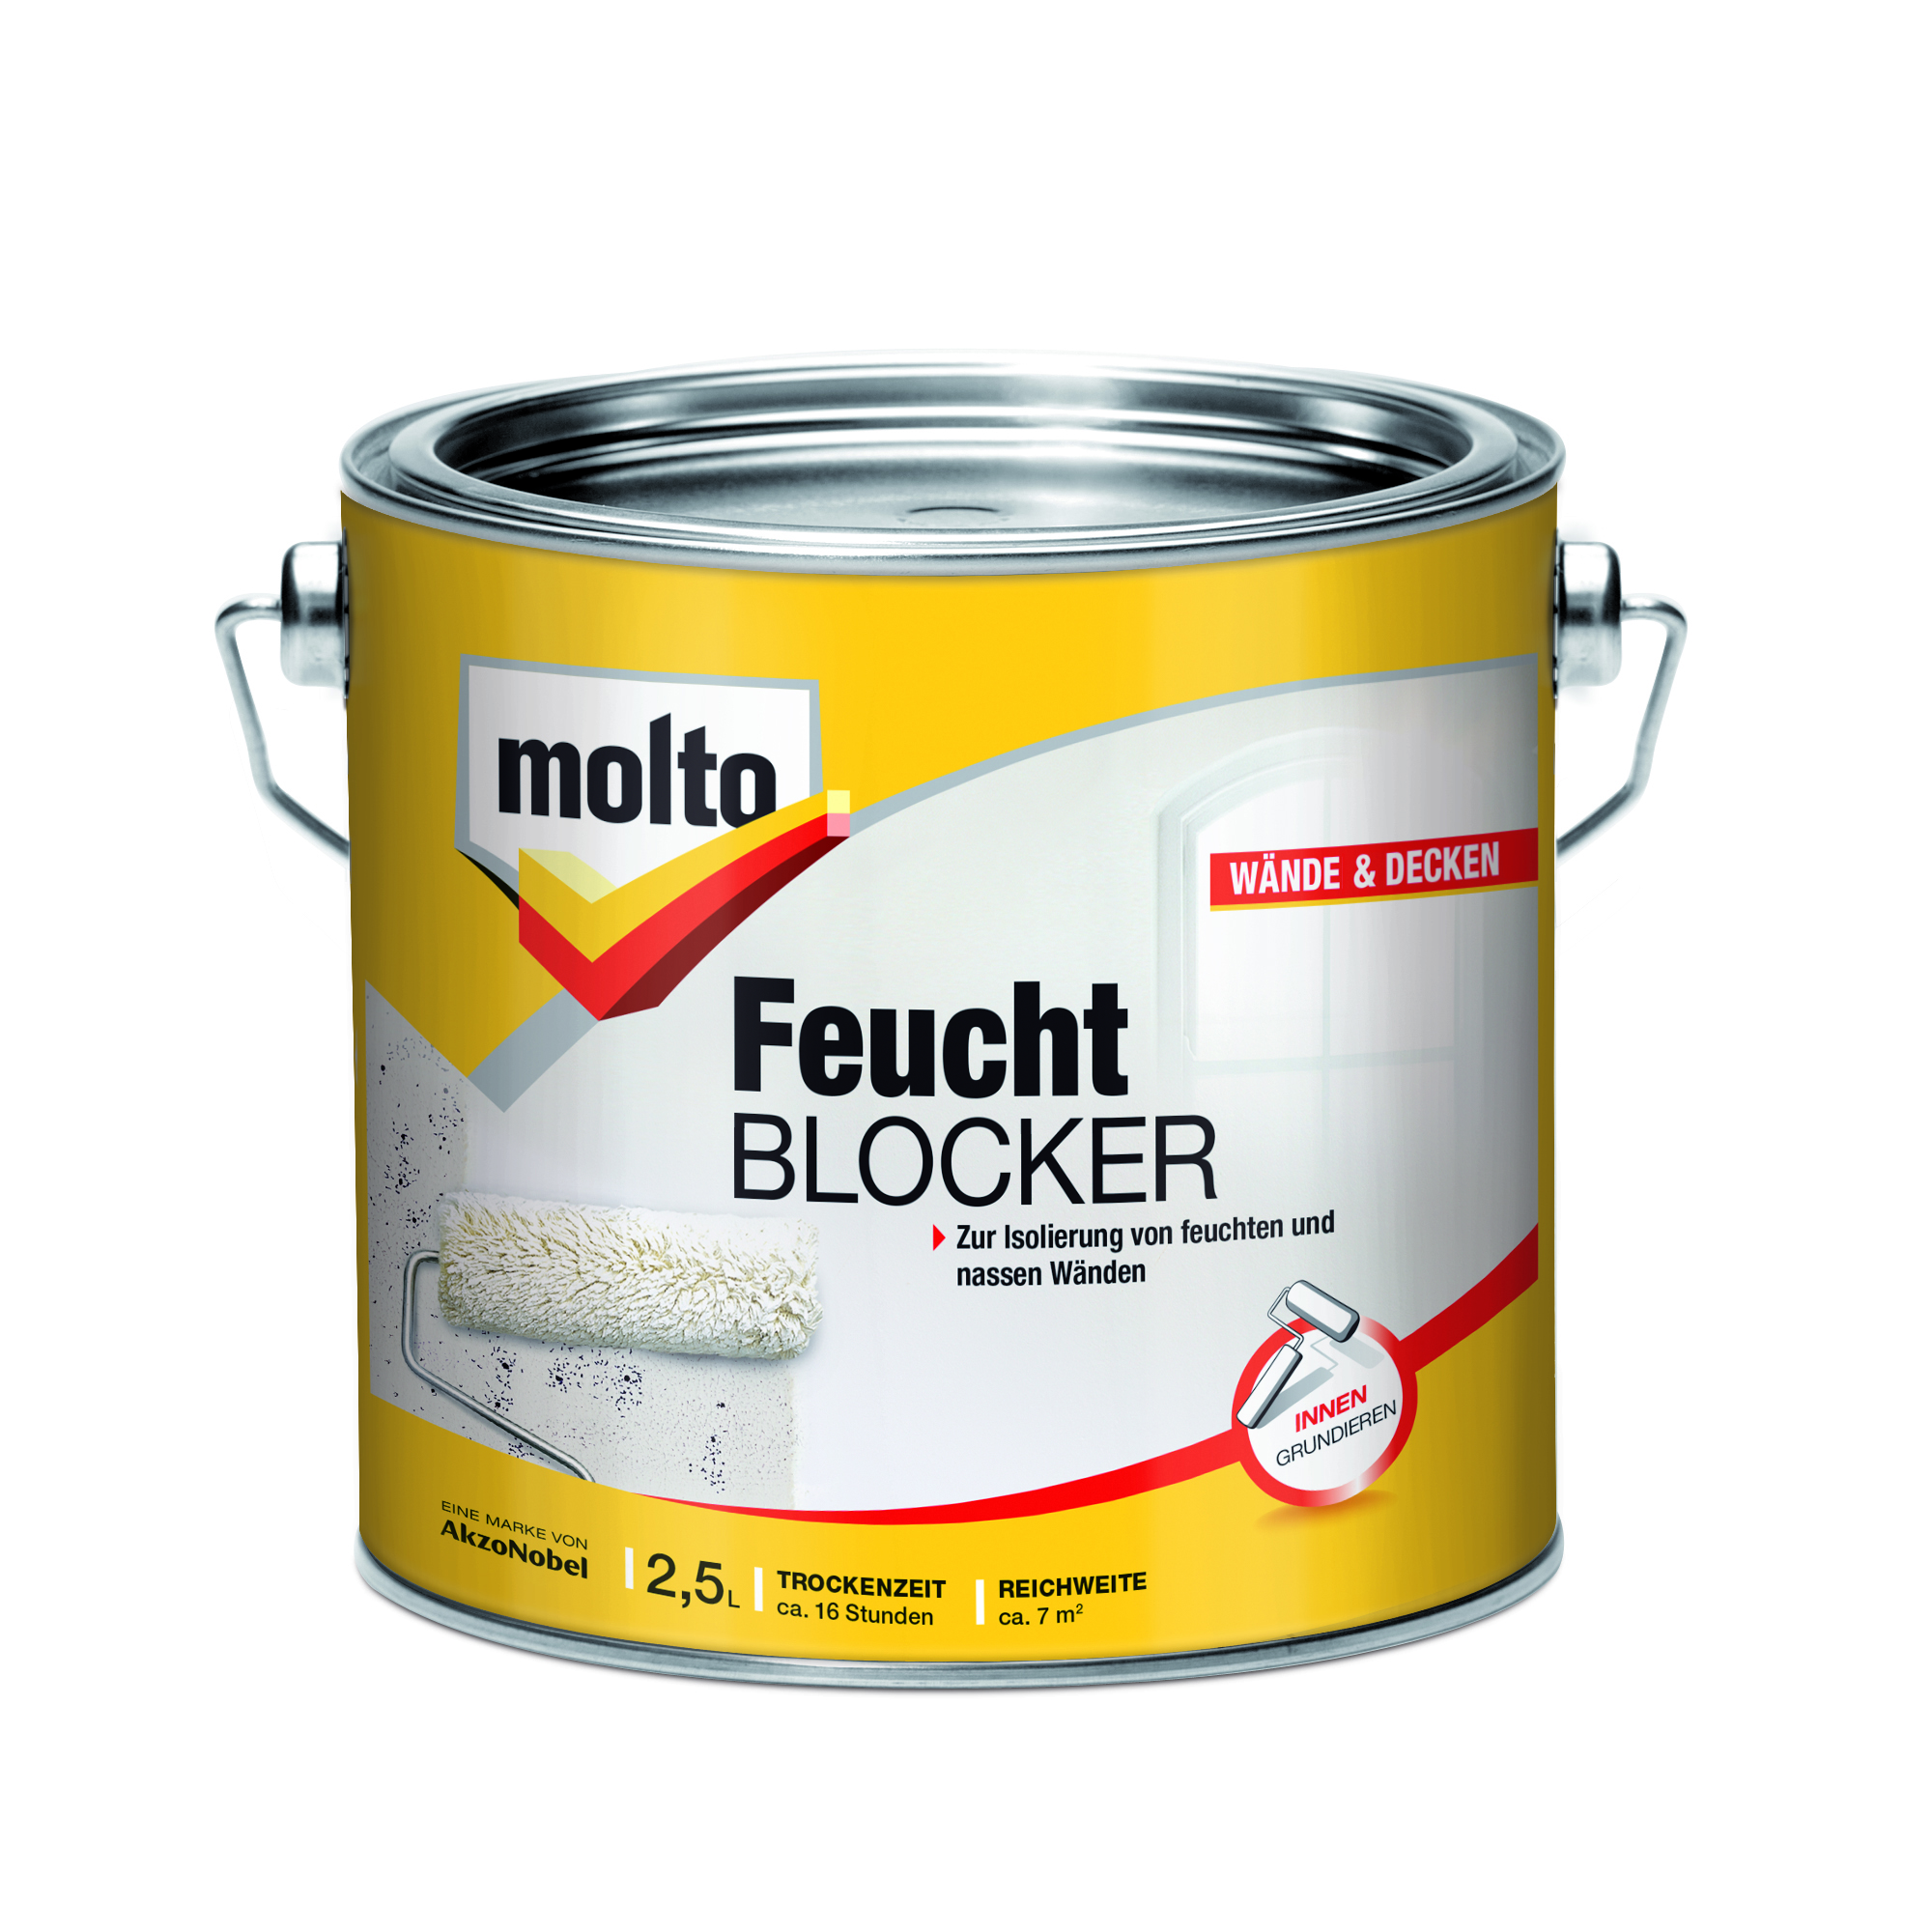 Feucht-Blocker 2,5 l + product picture